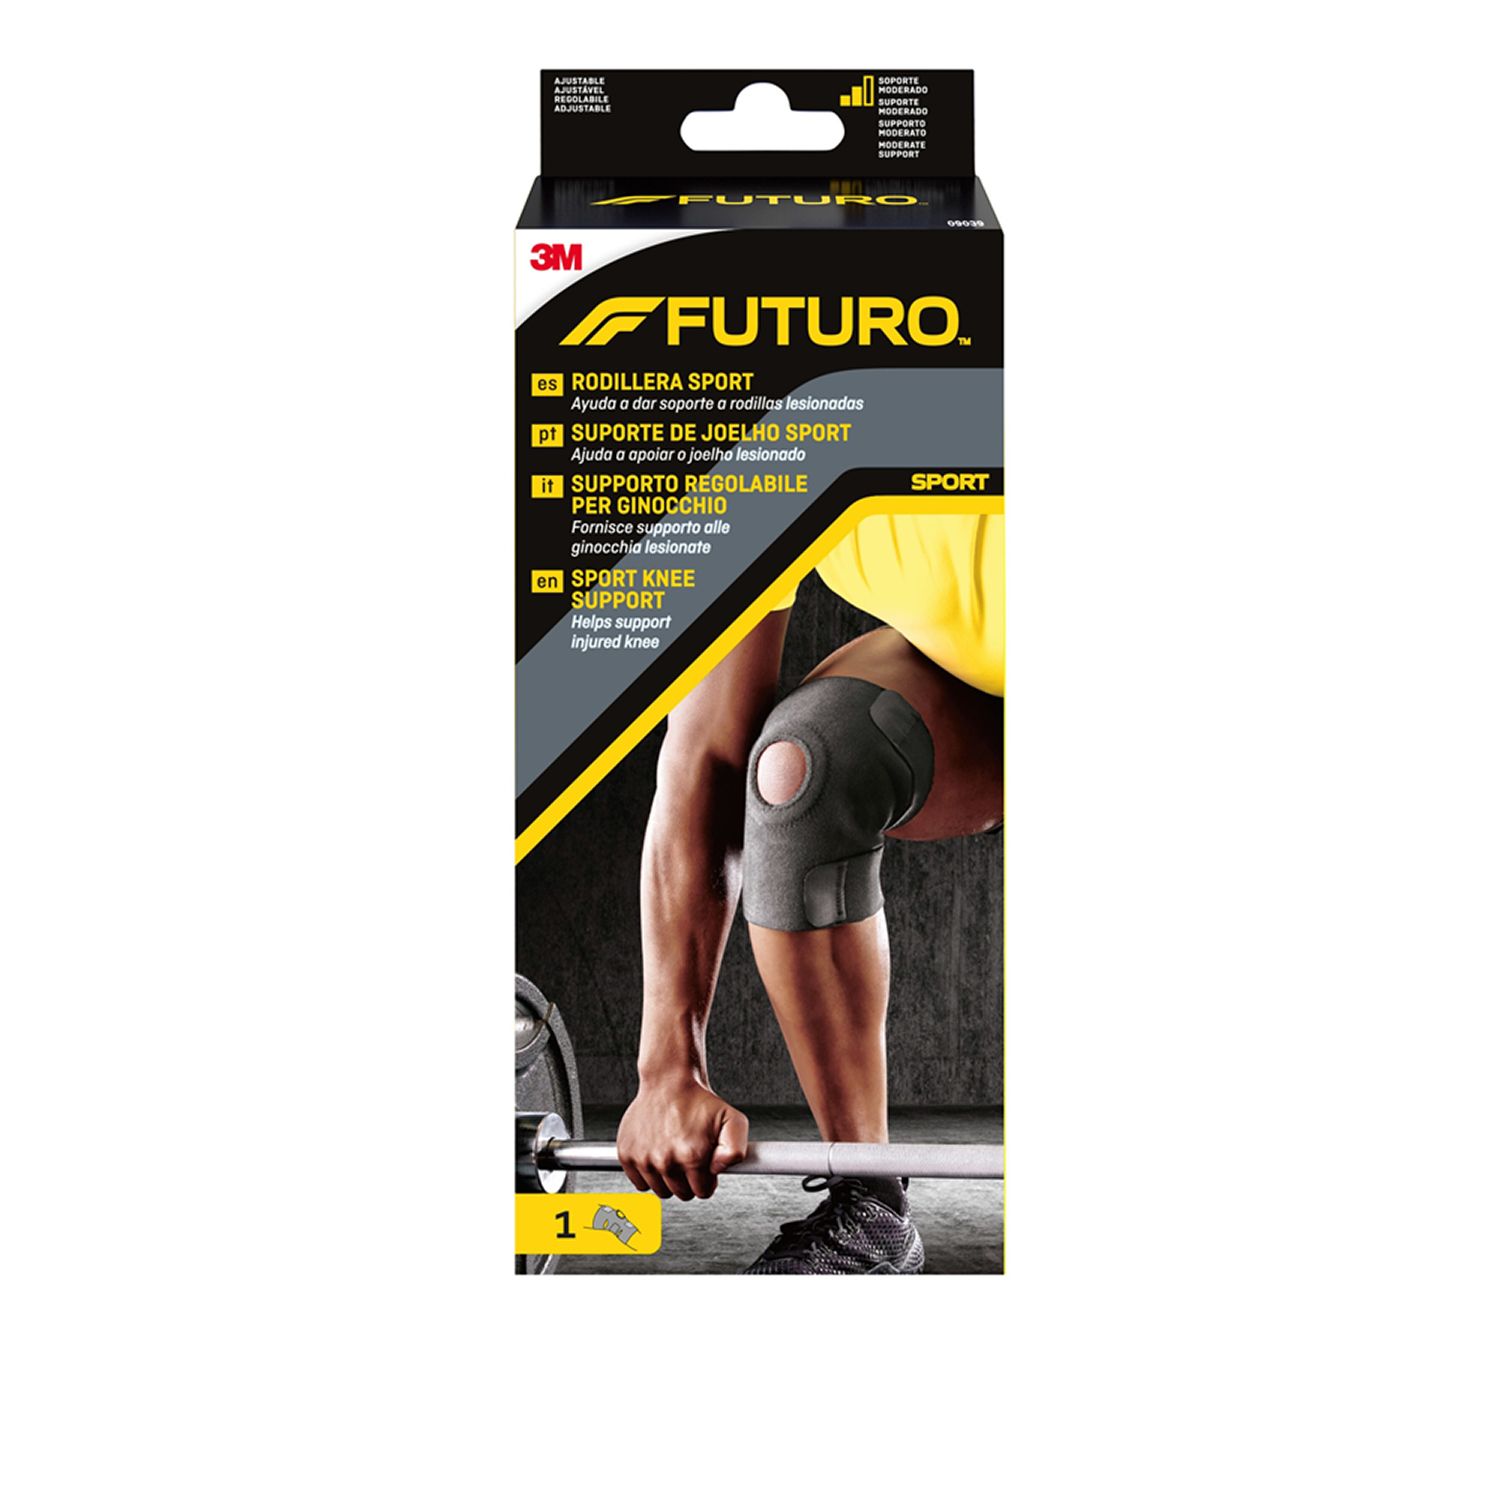 FUTURO™ Supporto regolabile per ginocchio 09039, Regolabile (33.0 - 44.4 cm)